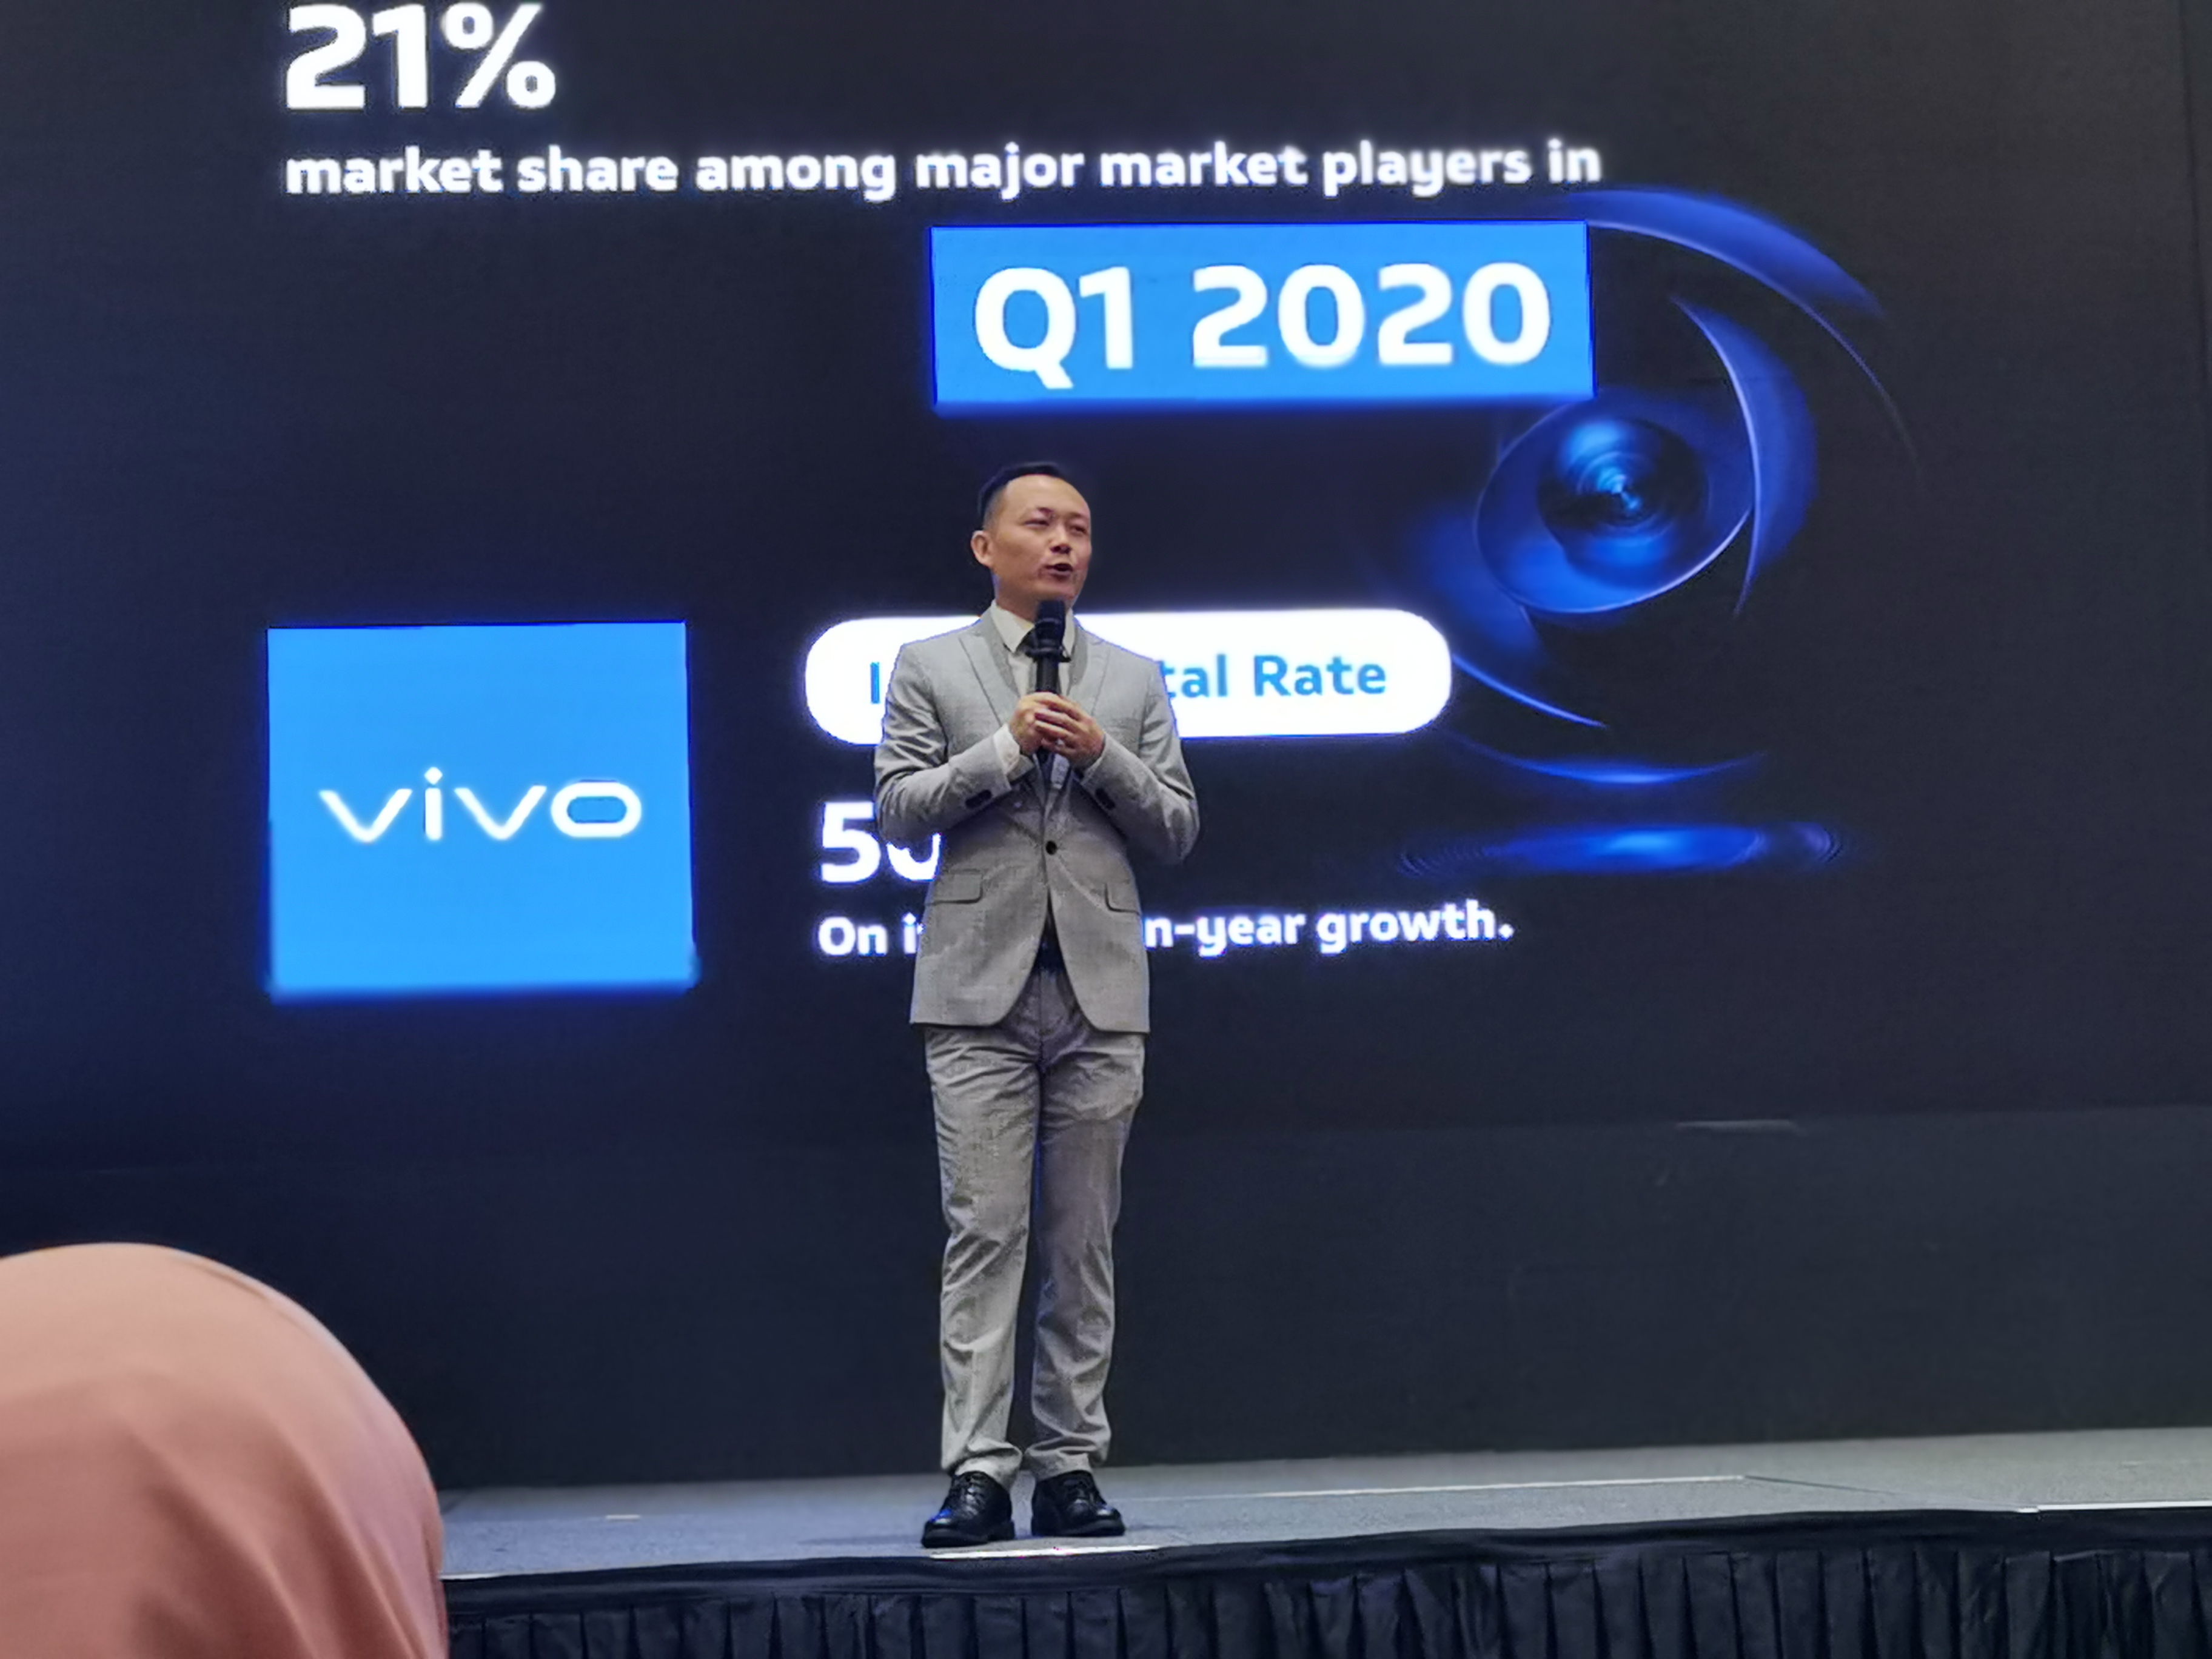 马来西亚Vivo执行总裁Mike Xu说，将会致力提升大马Vivo用户的体验。